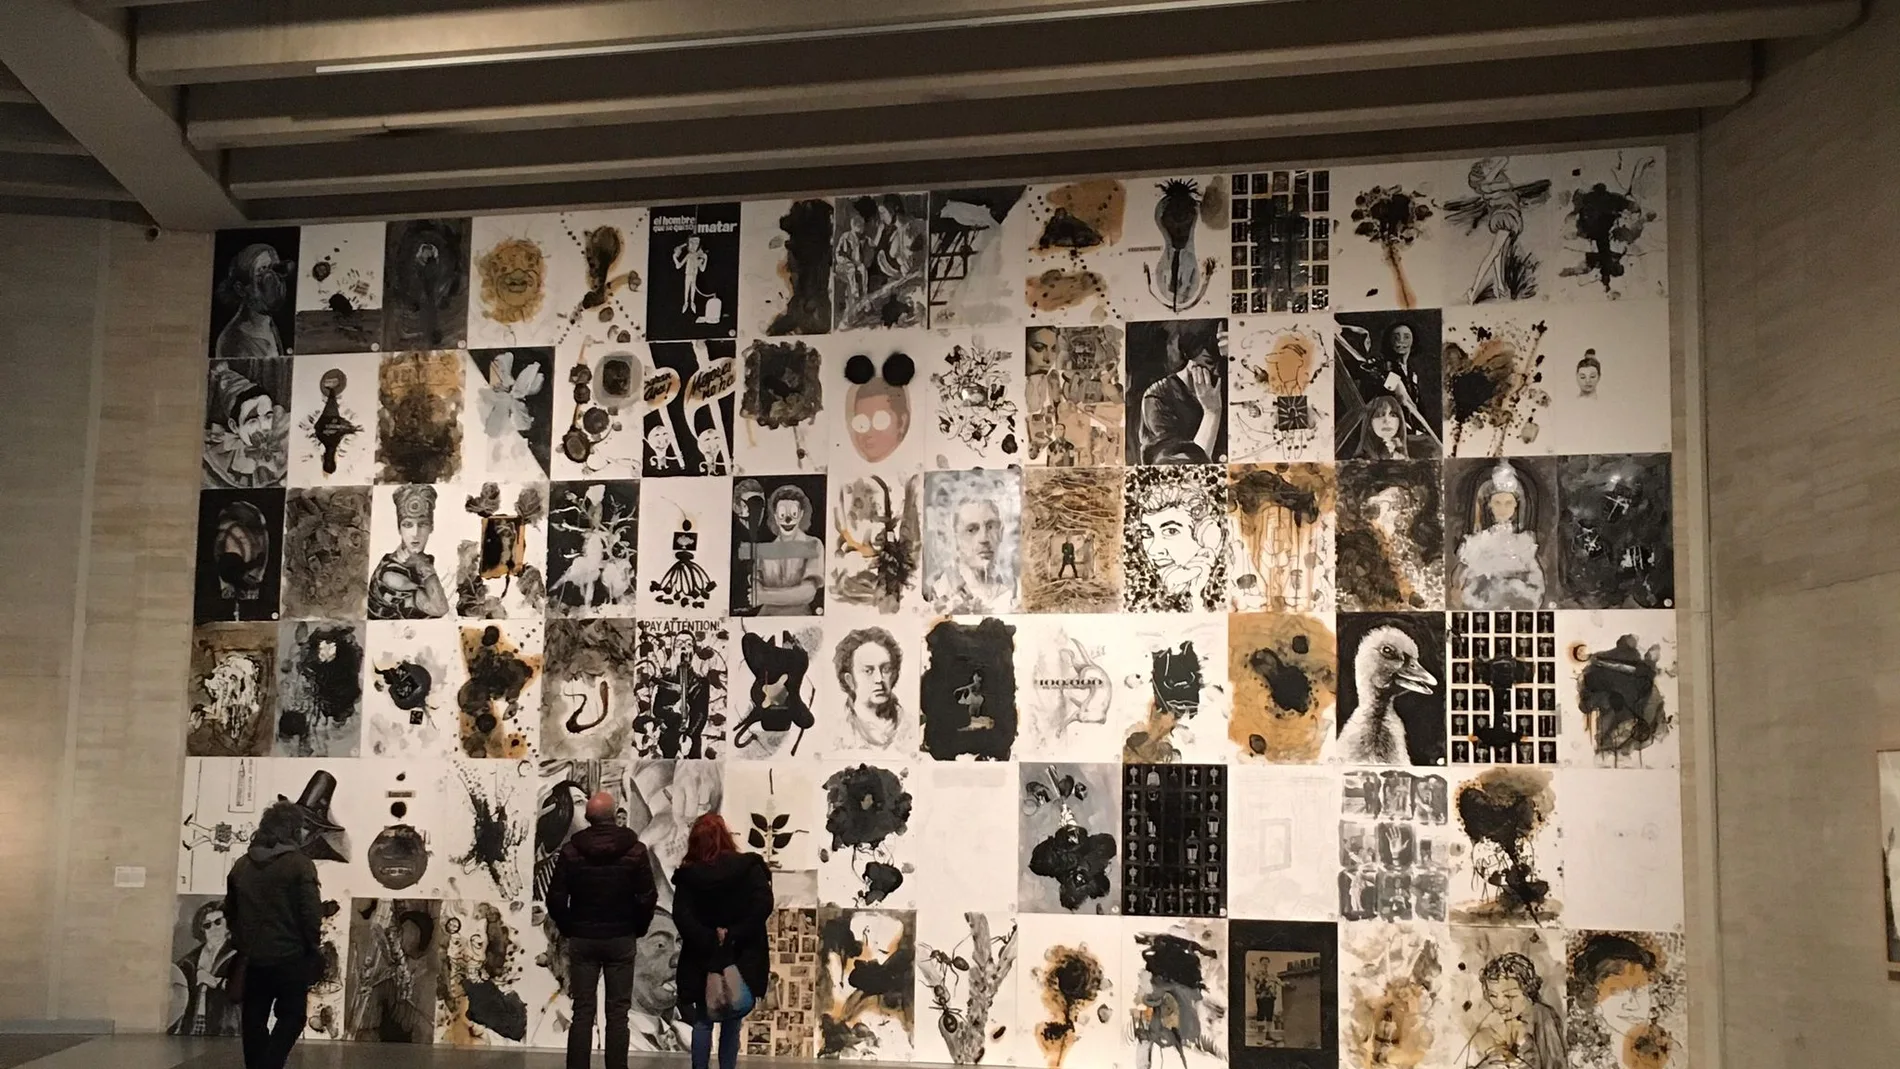 Exposición “El sueño de la razón. Colección MUSAC”, en concreto a la obra de Jorge Galindo “100 dibujos negros”.